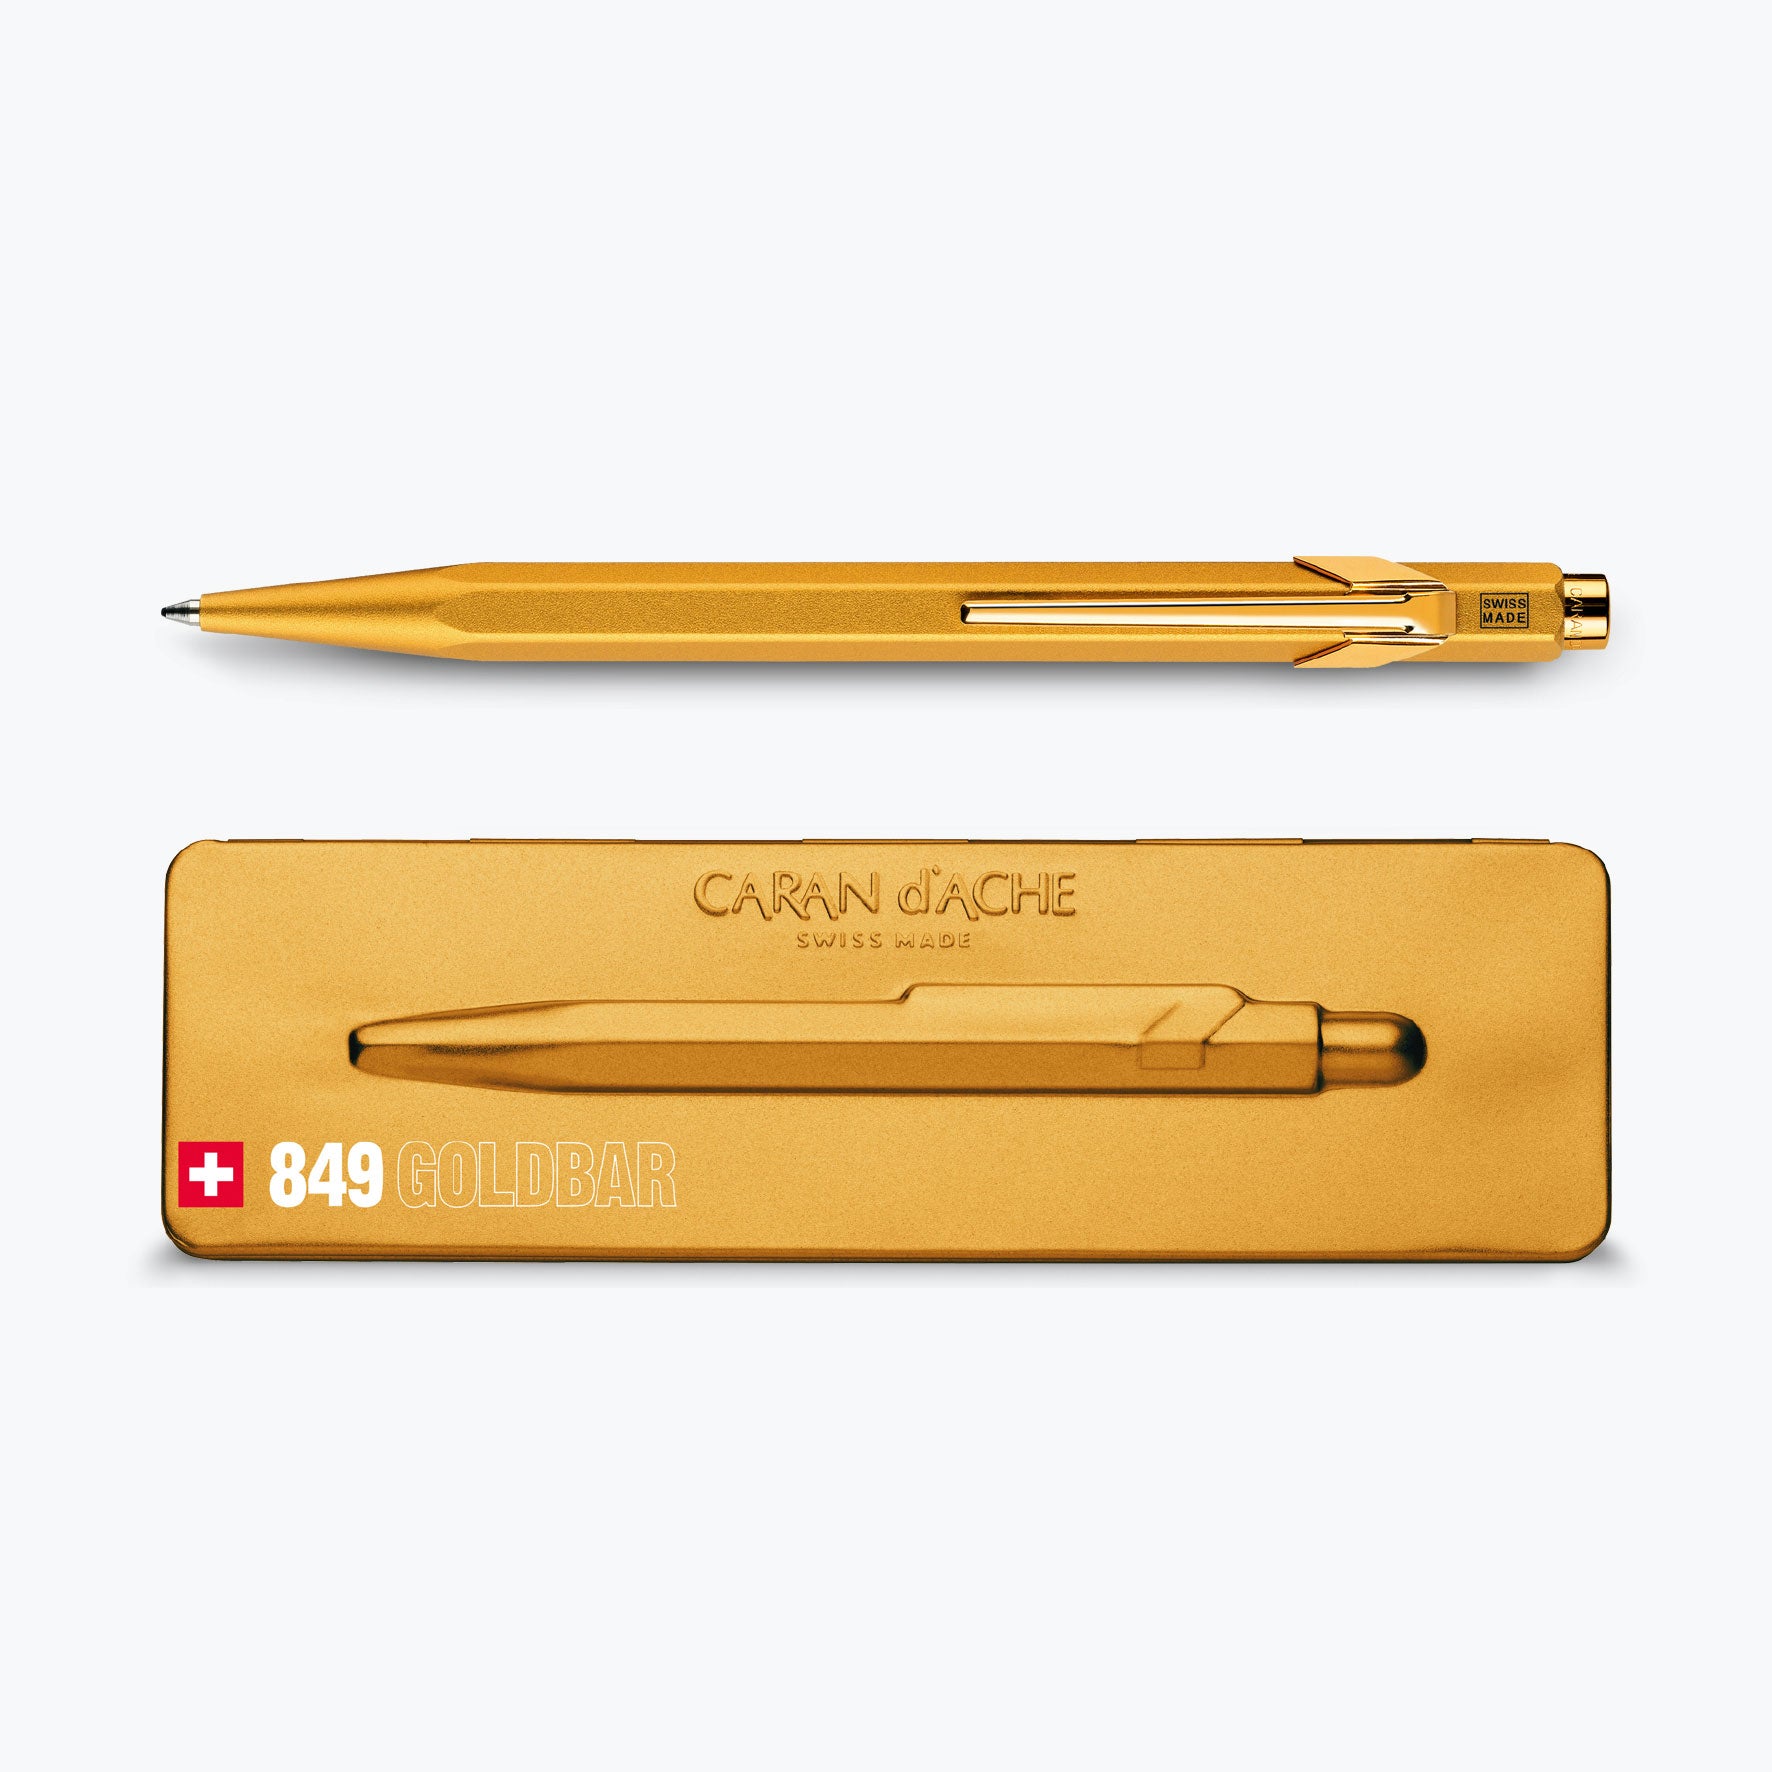 Caran d'Ache, 849 Ballpoint Pen Gold Bar